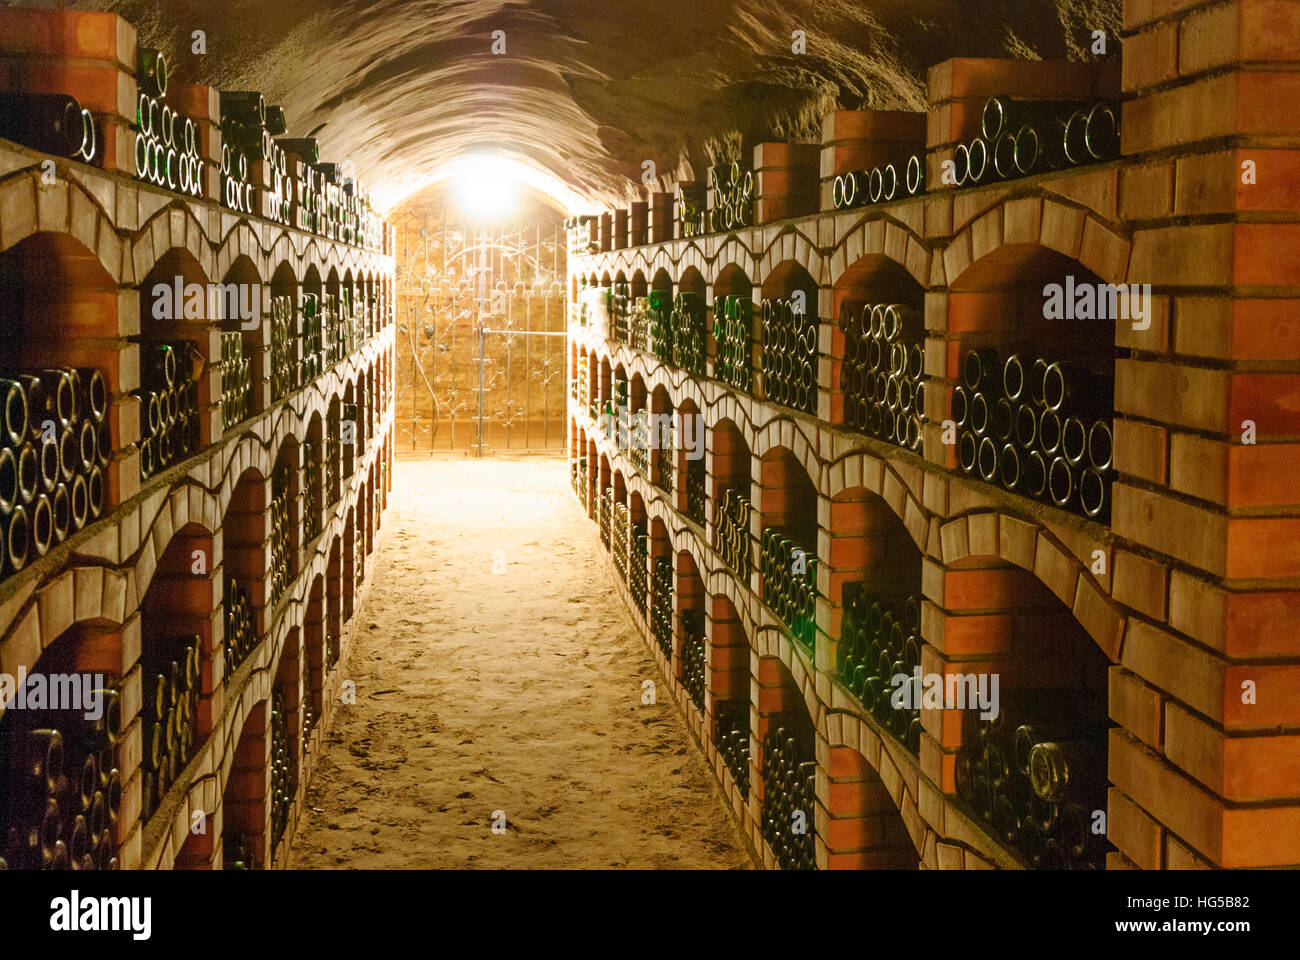 Retz: Retz experience wine cellar; Stock of old wines, Weinviertel, Niederösterreich, Lower Austria, Austria Stock Photo